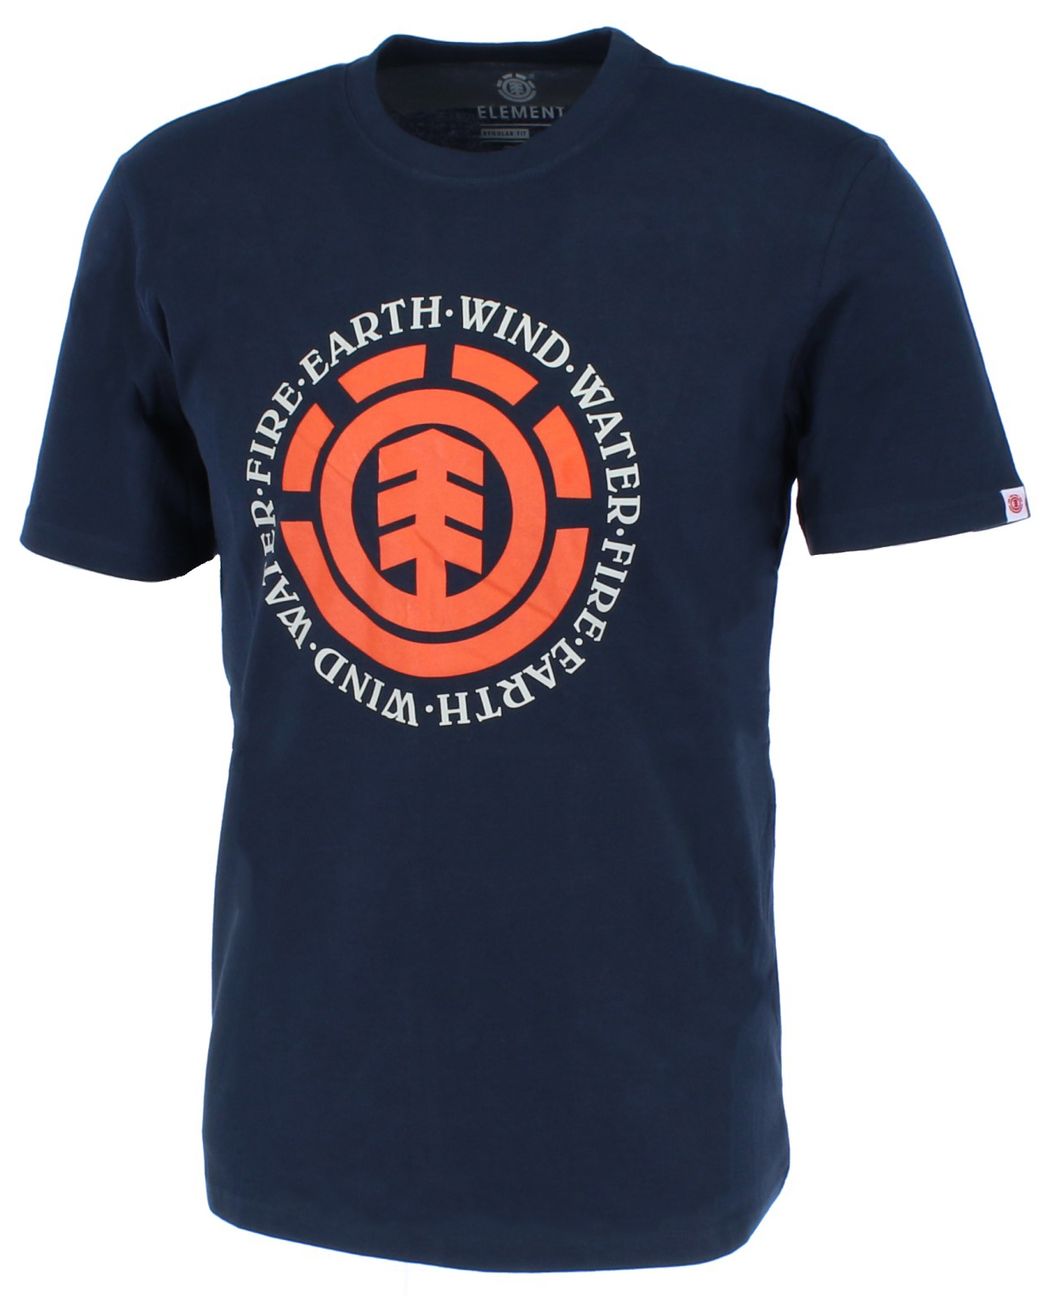 ELEMENT SEAL SS Herren T-Shirt Earth Wind Water Fire - Element - SAGATOO - 3664564628475